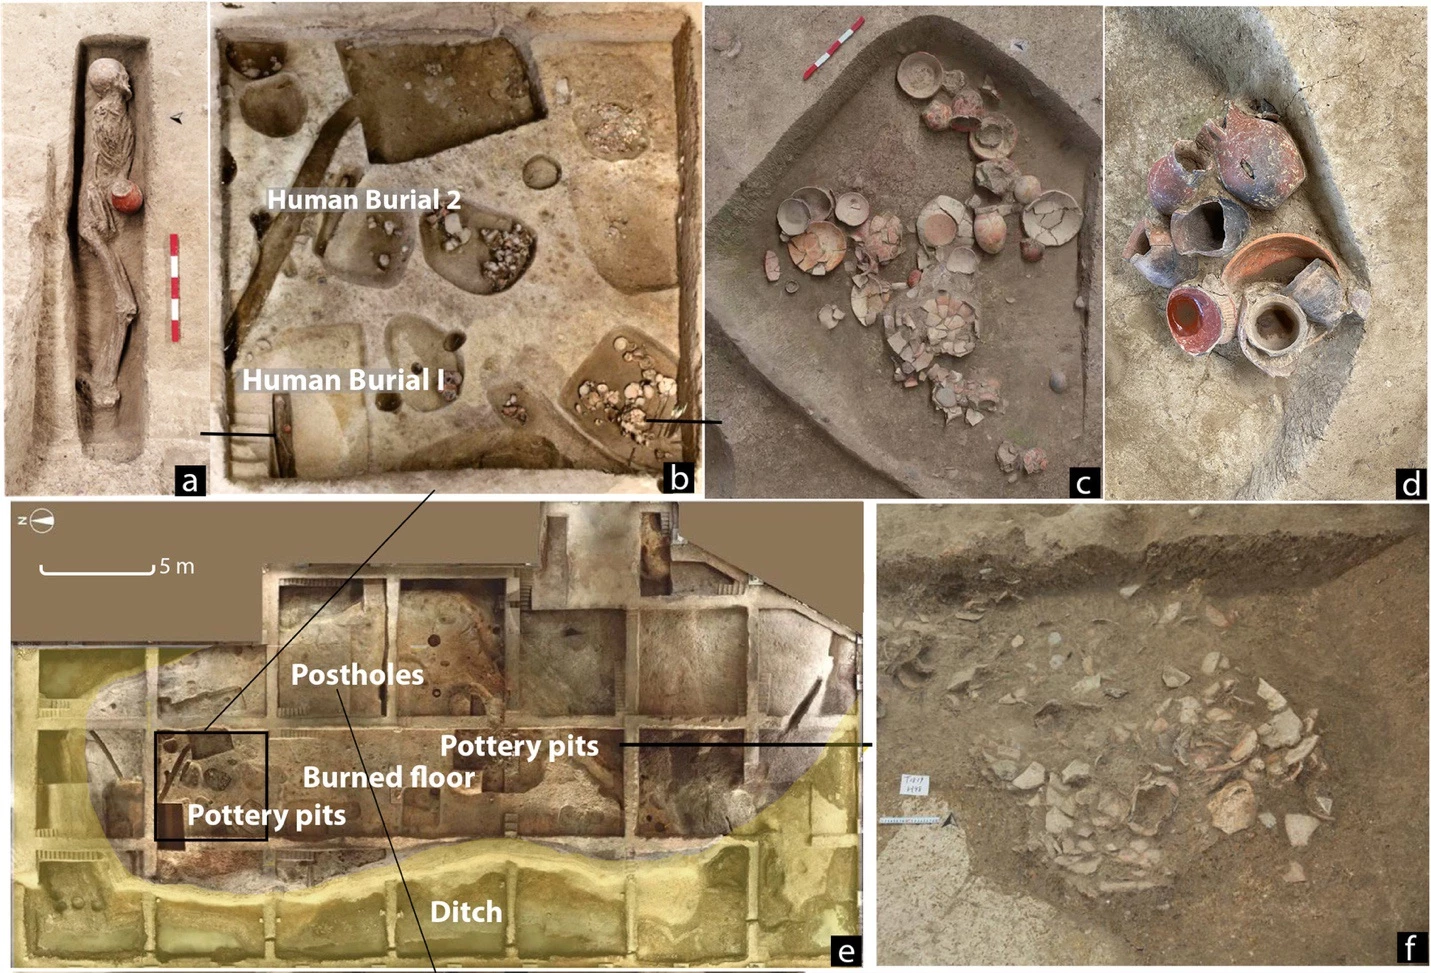 Hình bố cục của Kiều Đầu, bao gồm các khu chôn cất con người, các hố gốm và con mương giáp với gò đất.